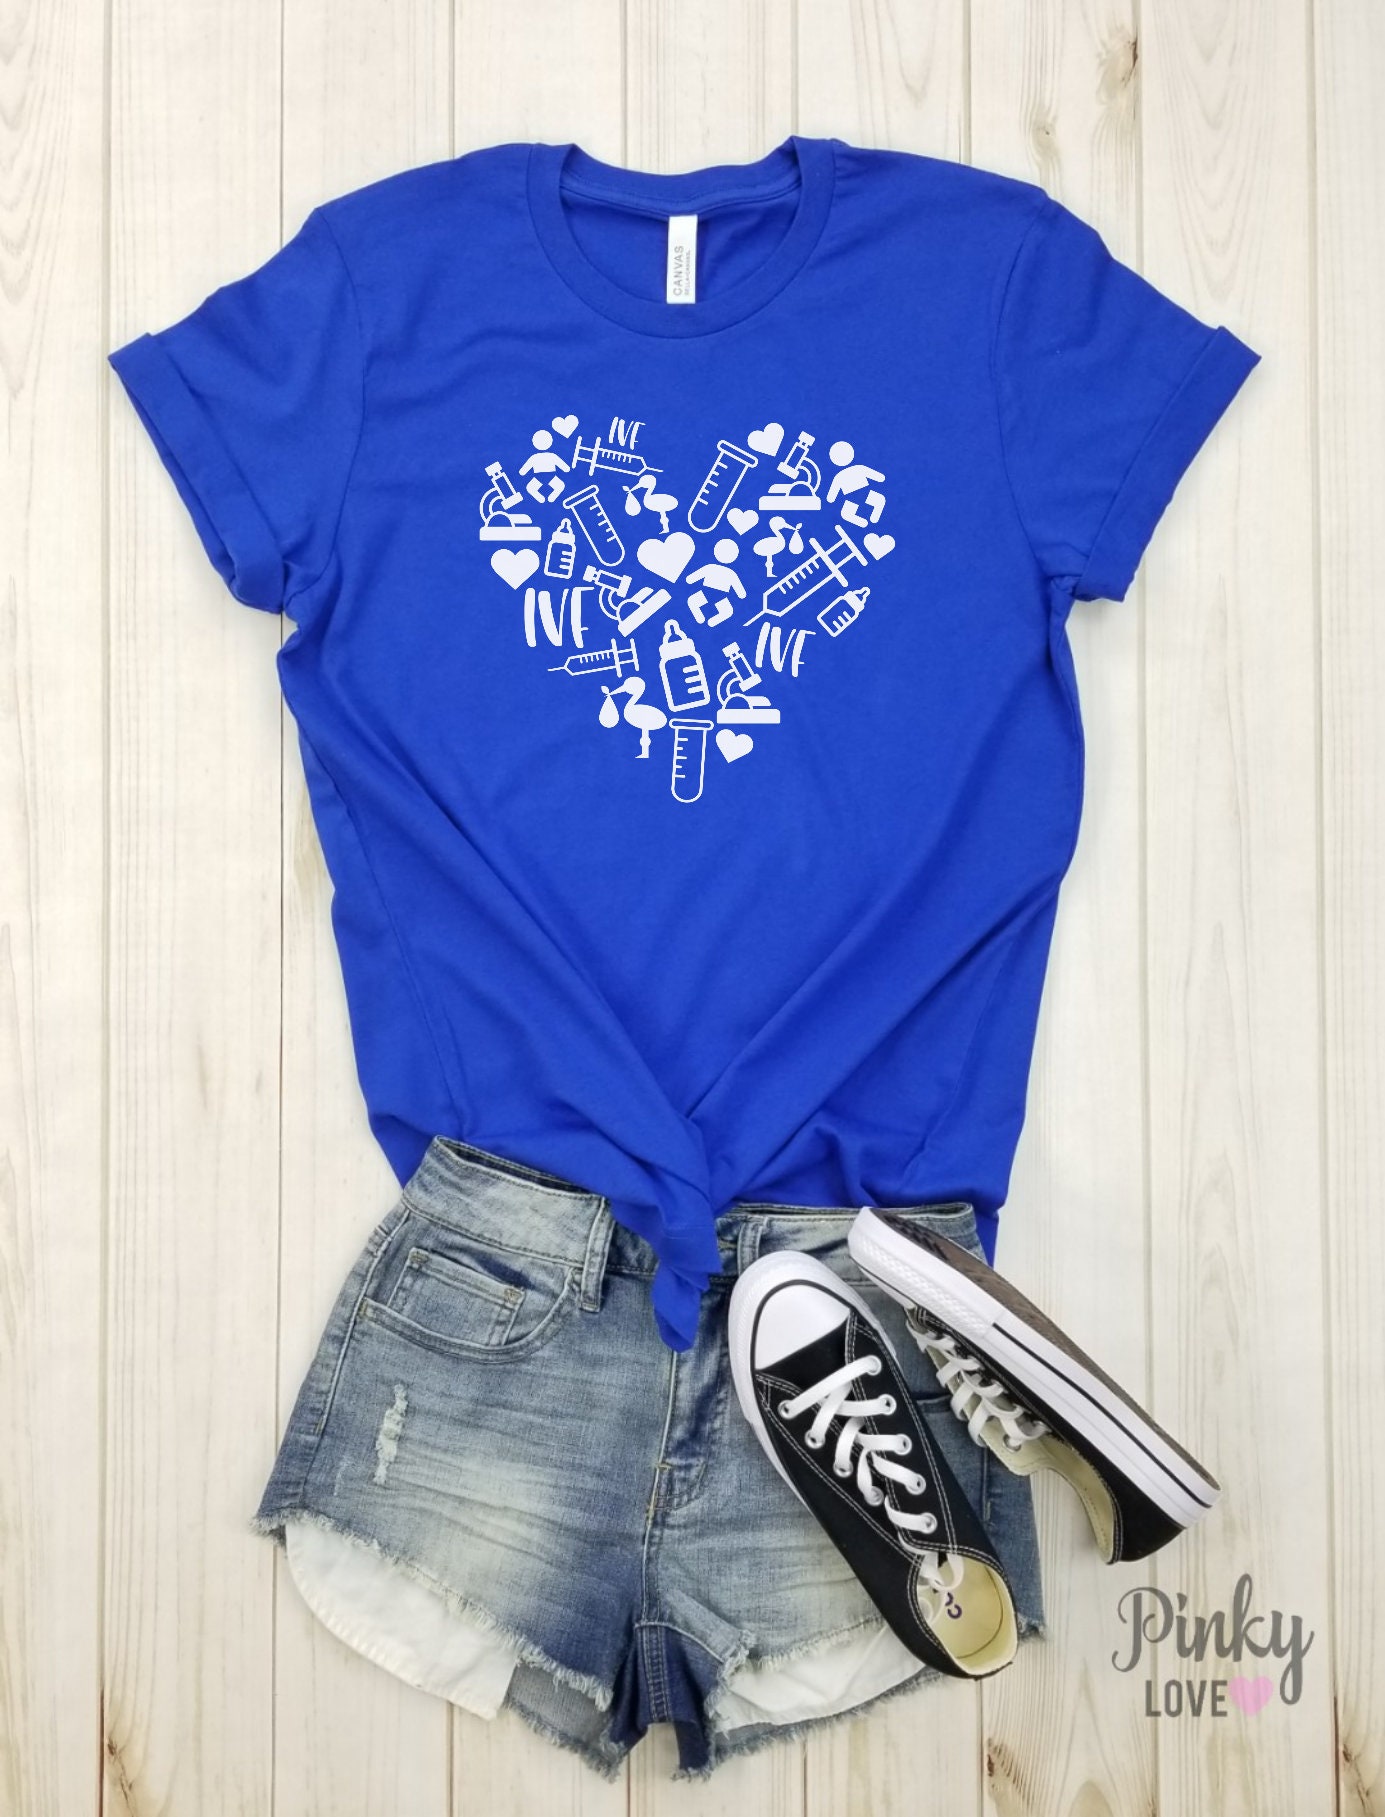 IVF Heart white Unisex Shirt Ivf Shirt IVF Shirt IVF - Etsy